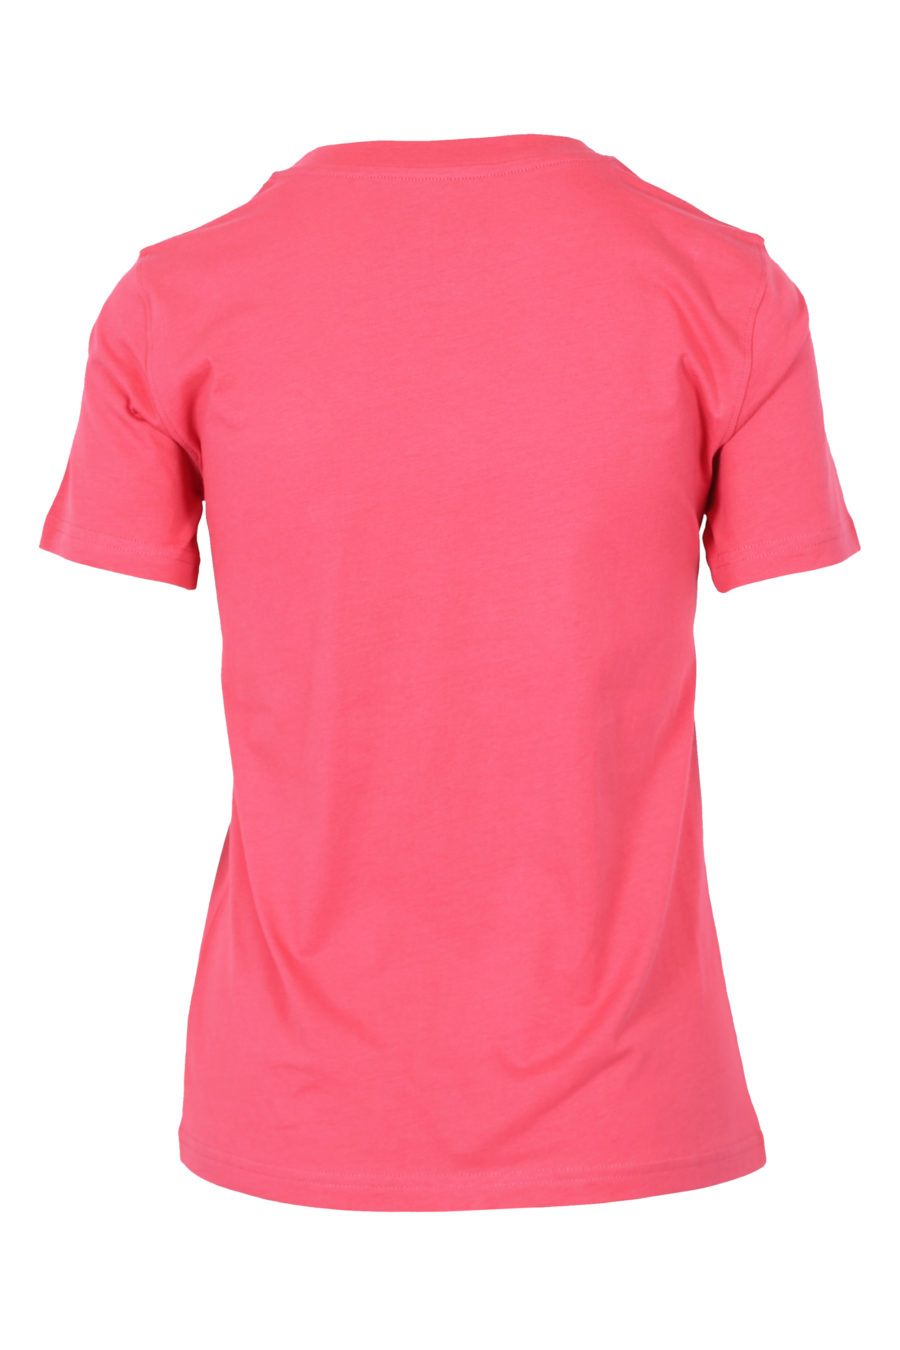 Camiseta rosa de manga corta "Couture" - IMG 3146